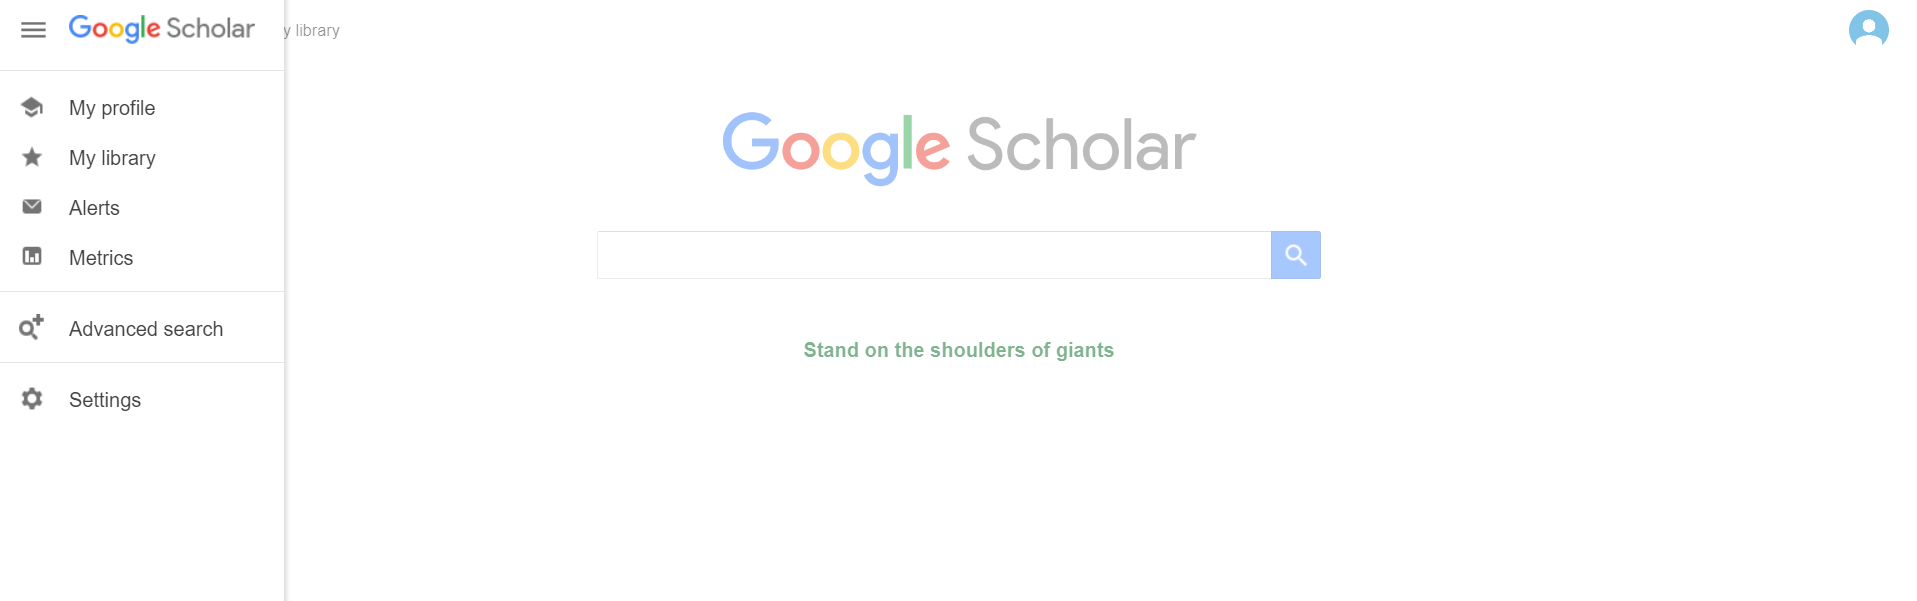 Google Scholar 7